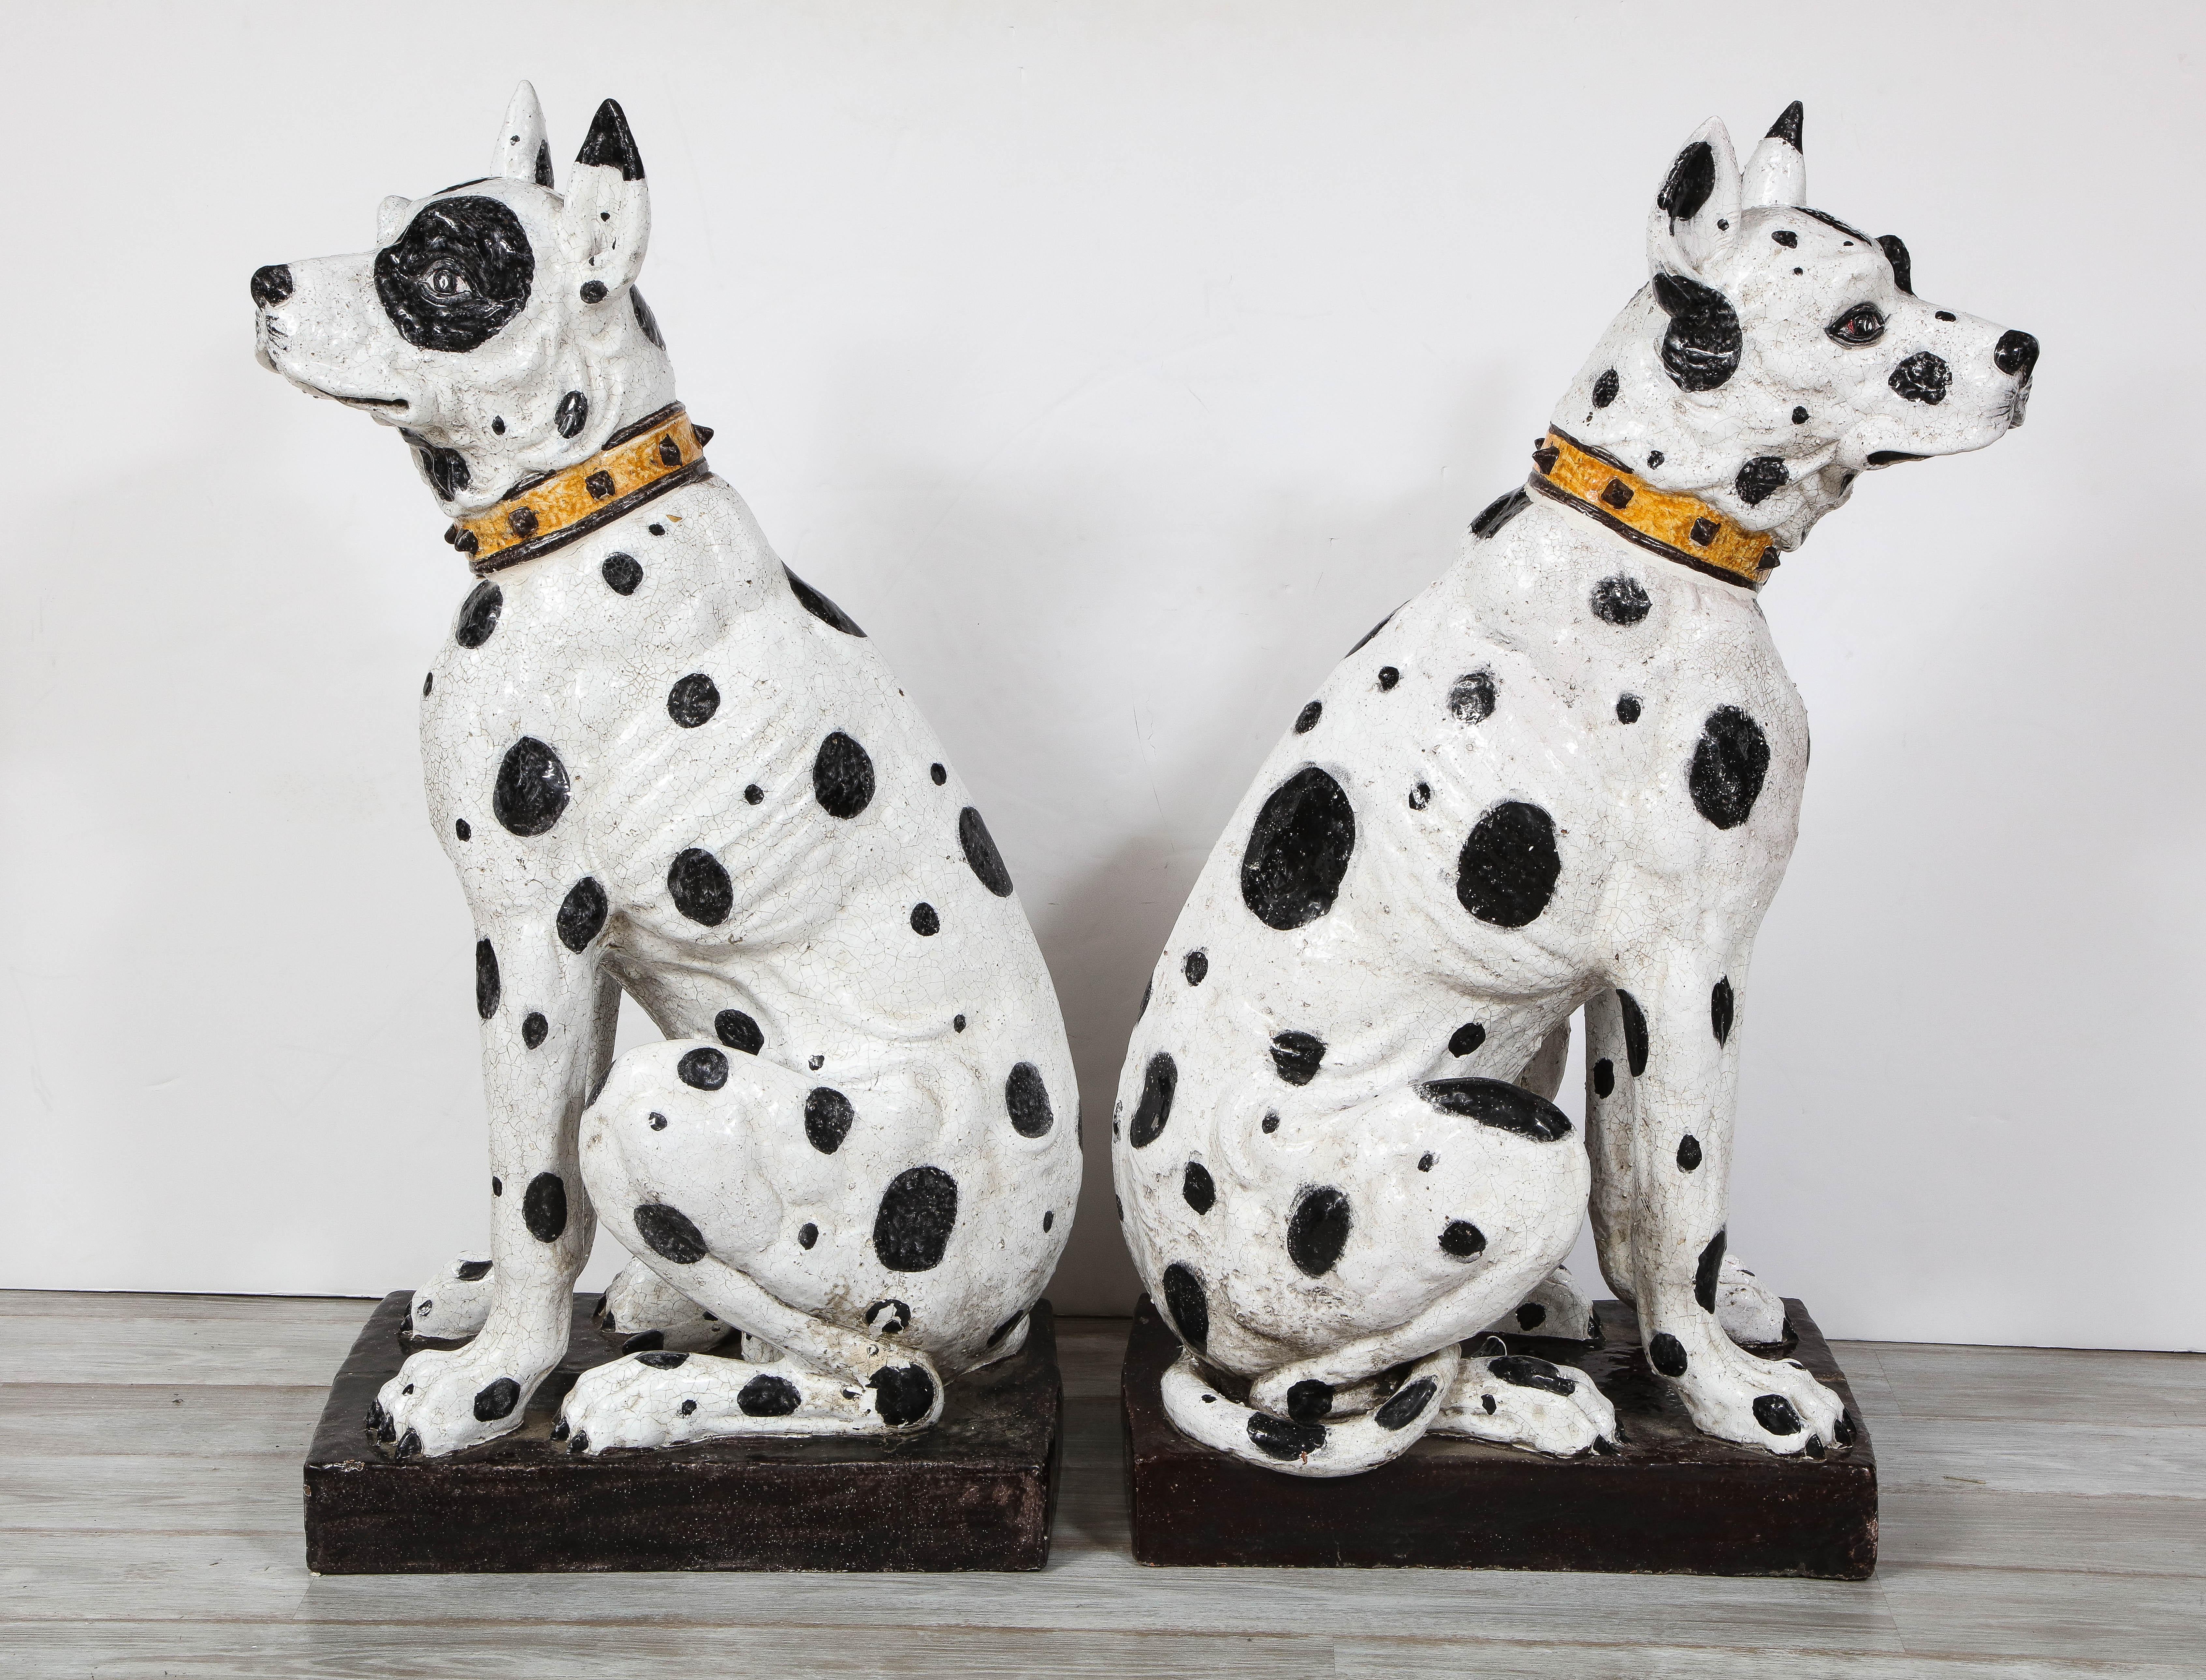 Ein majestätisches Paar von Mid-Century Modern Italienisch lebensgroße schwarze und weiße Keramik Deutsche Dogge Hunde in zwei verschiedenen sitzenden Positionen auf schwarzen Sockeln, die exquisit in realistischen anatomischen Details mit süßen